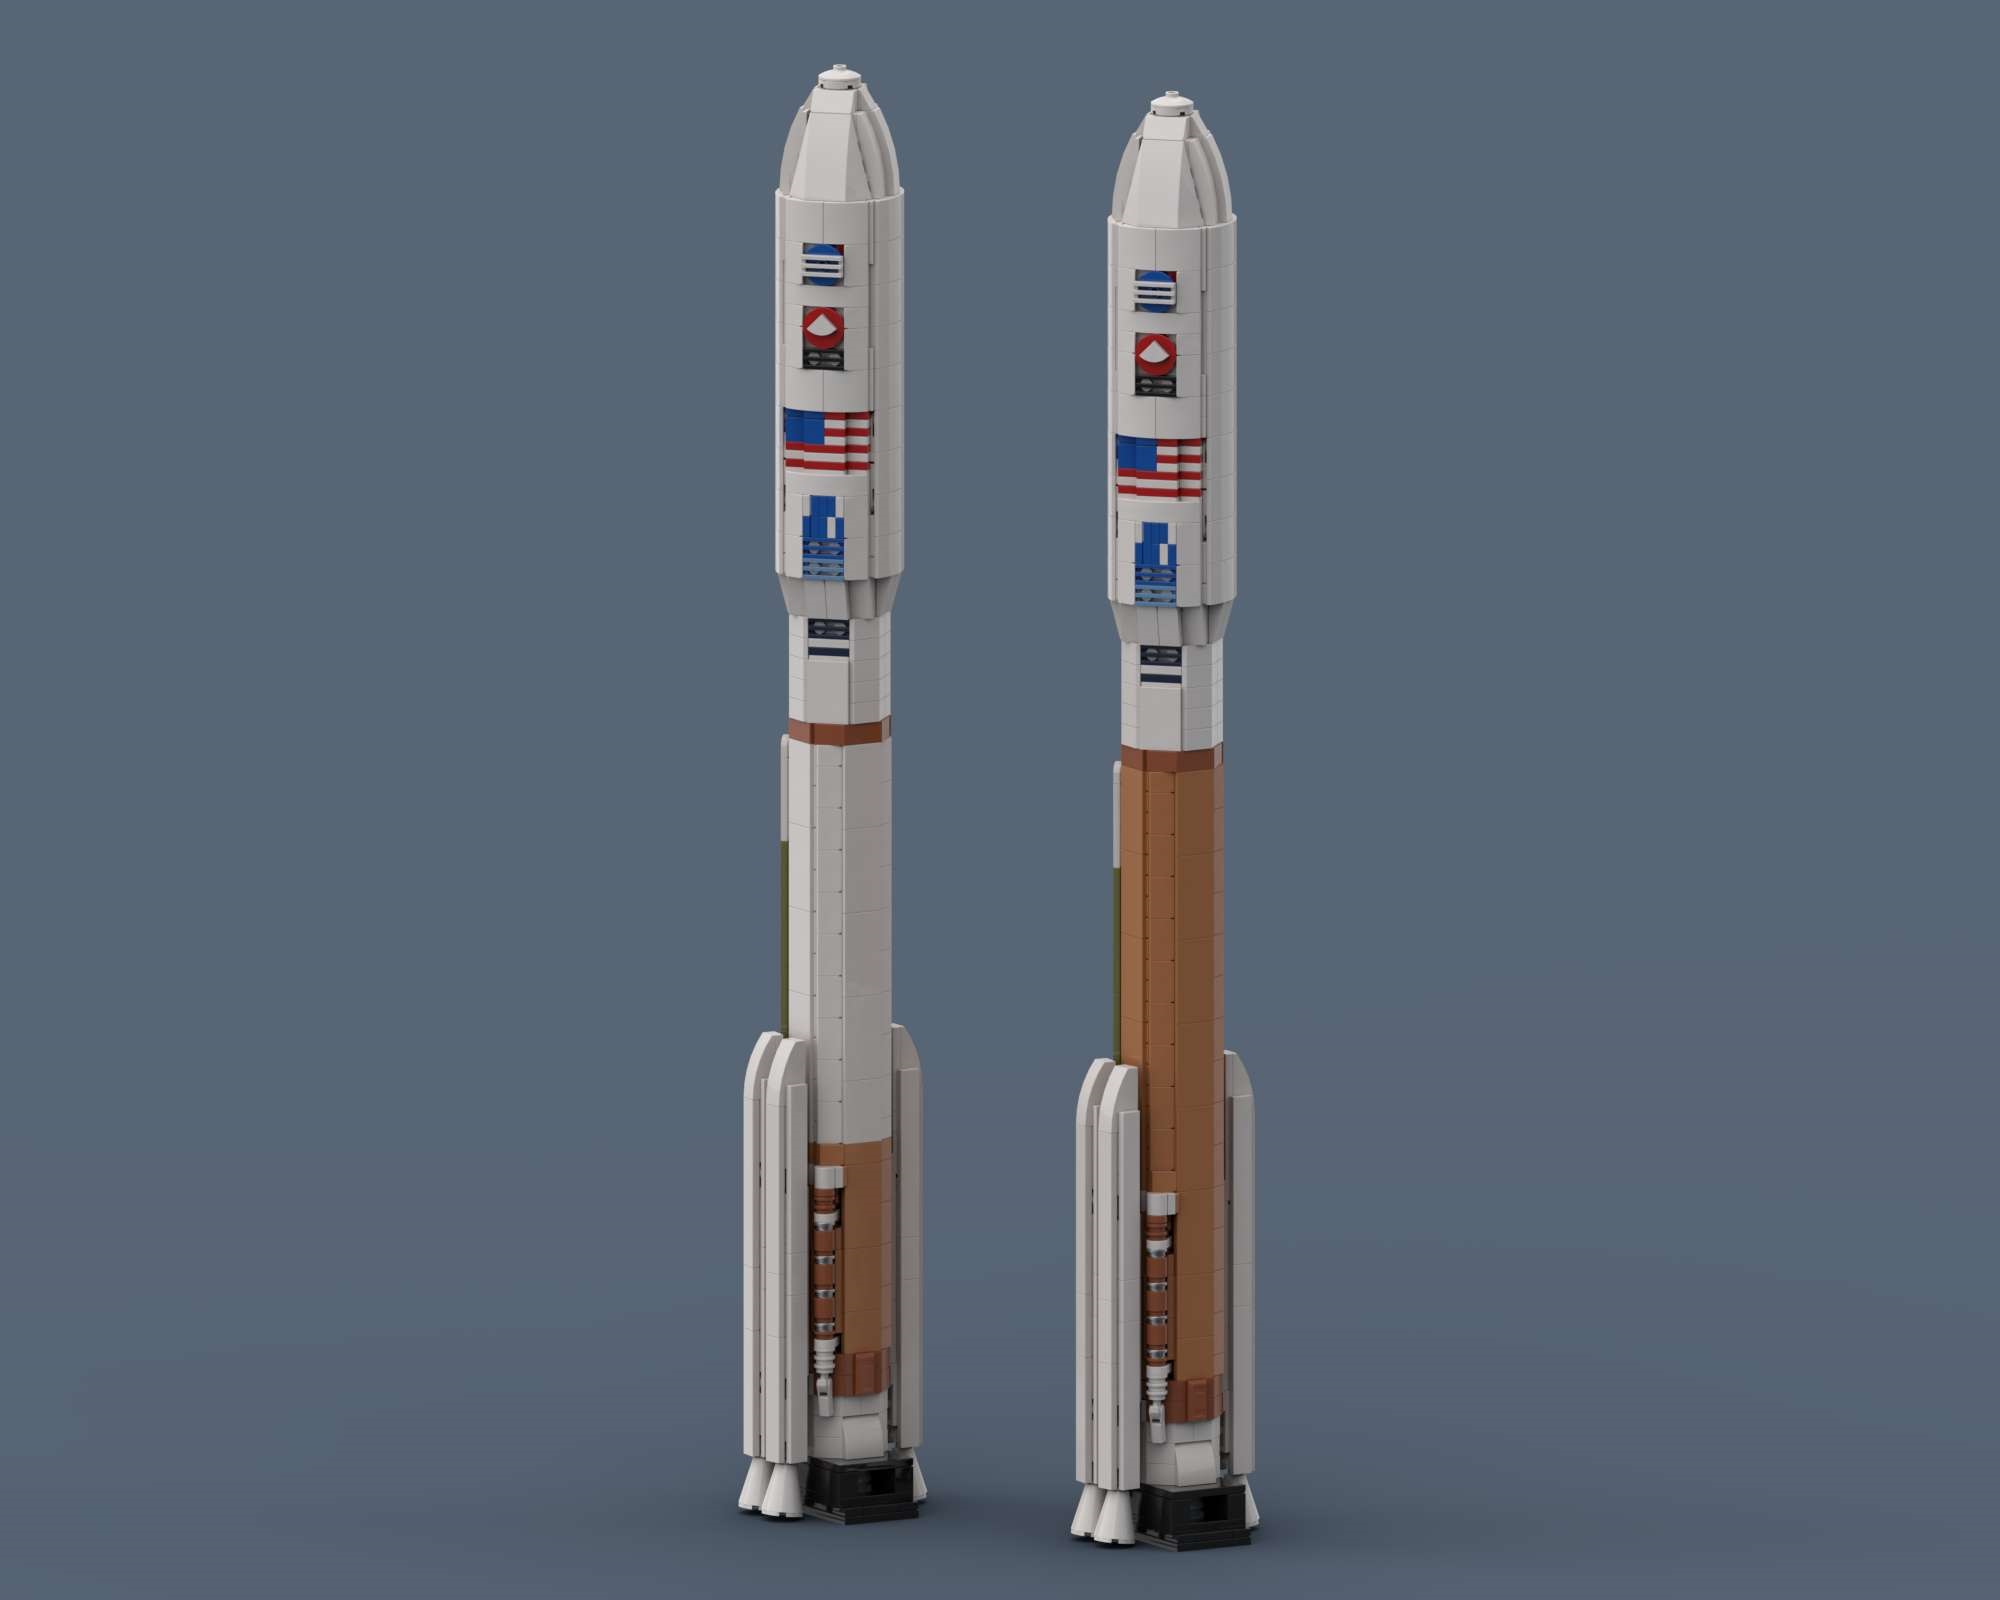 Atlas V 541 Mars 2020